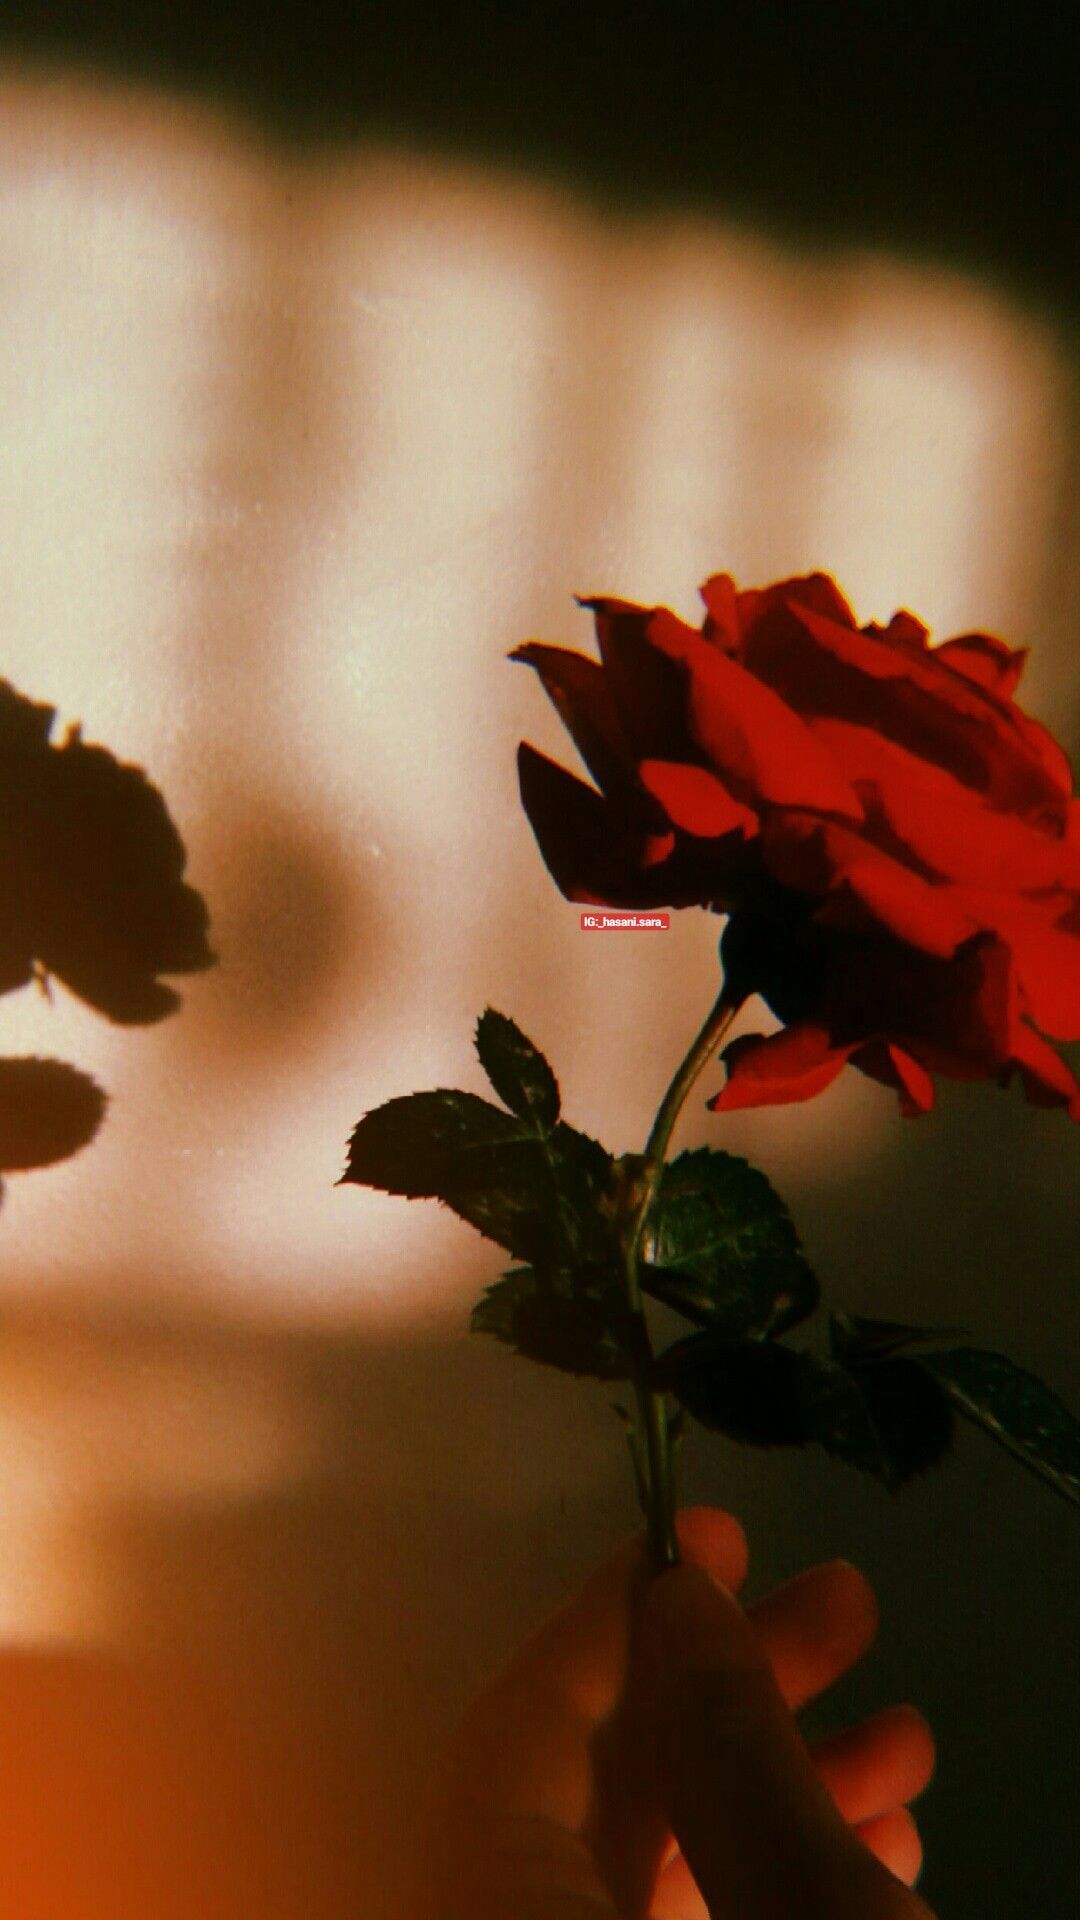 red #rose #aesthetic #hand #flower. Aesthetic roses, Aesthetic art